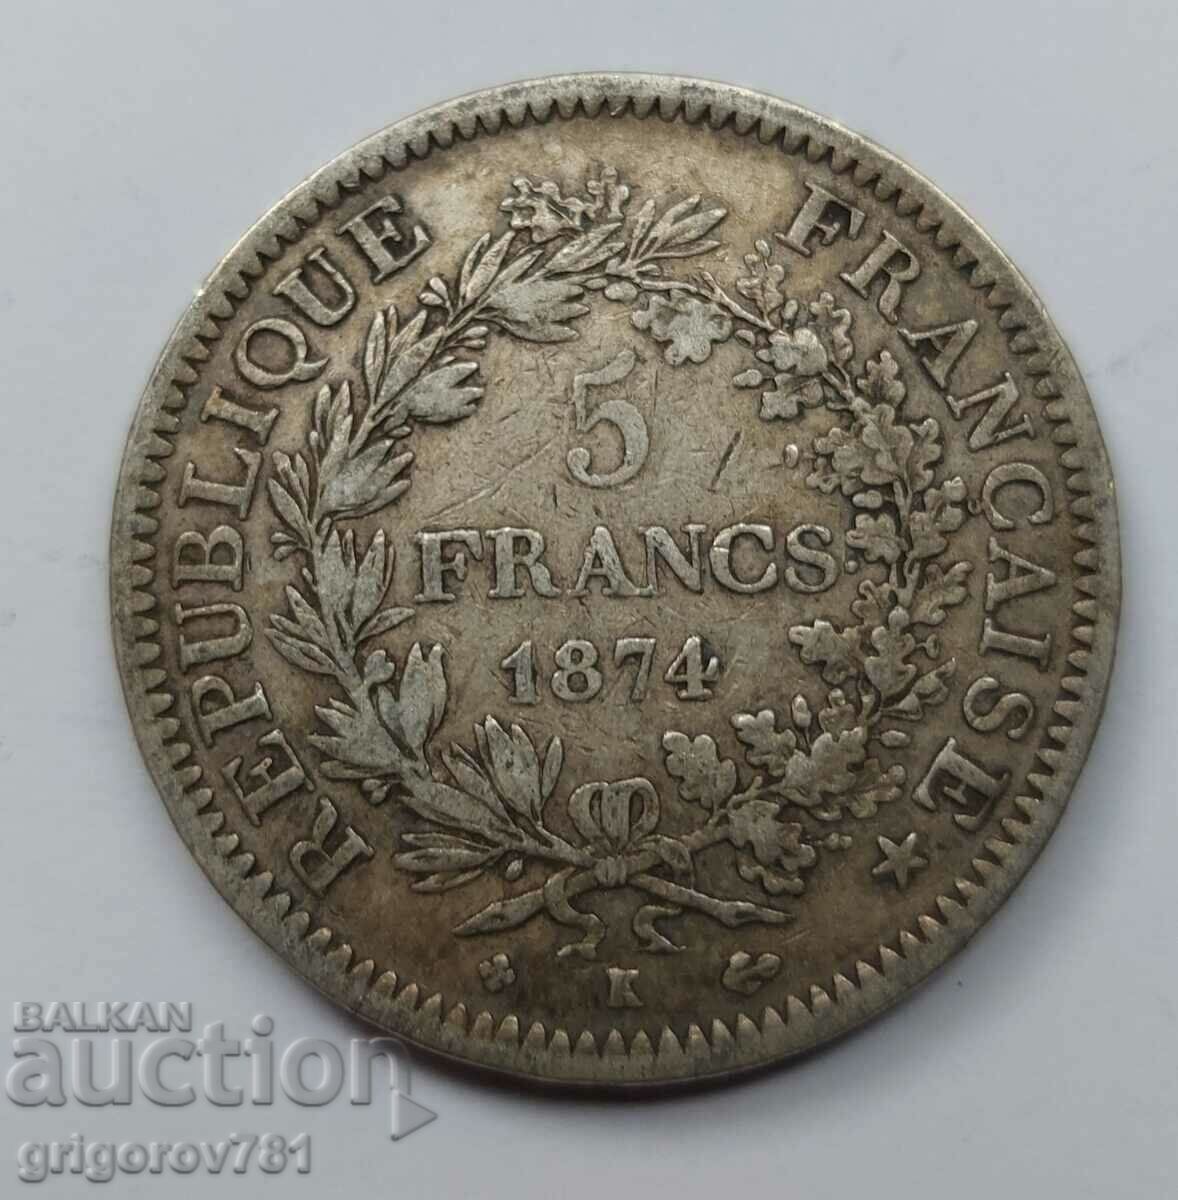 5 Φράγκα Ασήμι Γαλλία 1874 A - Ασημένιο νόμισμα #153